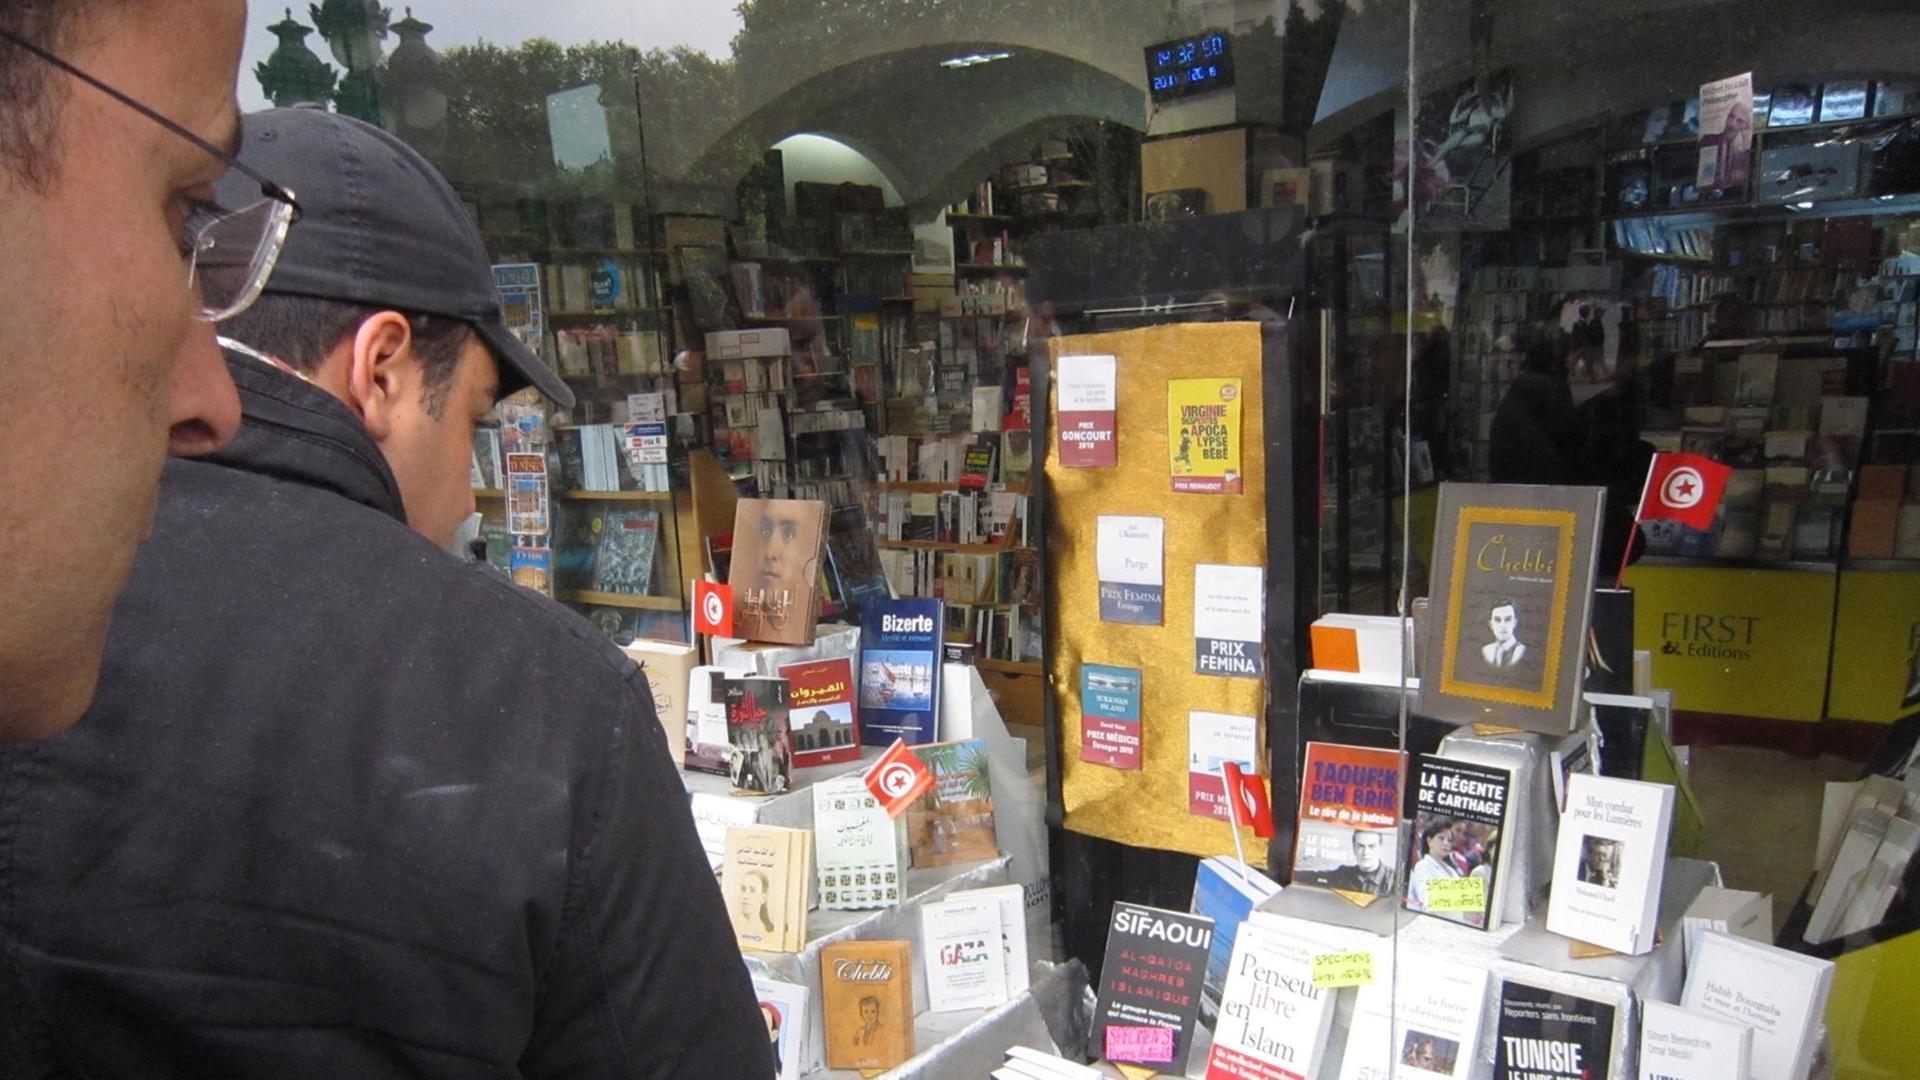 Zwei Passanten betrachten am 20.01.2011 die Auslage eines Buchladens in Tunis. Erstmals liegen zahlreiche bislang verbotene Bücher in der Auslage.